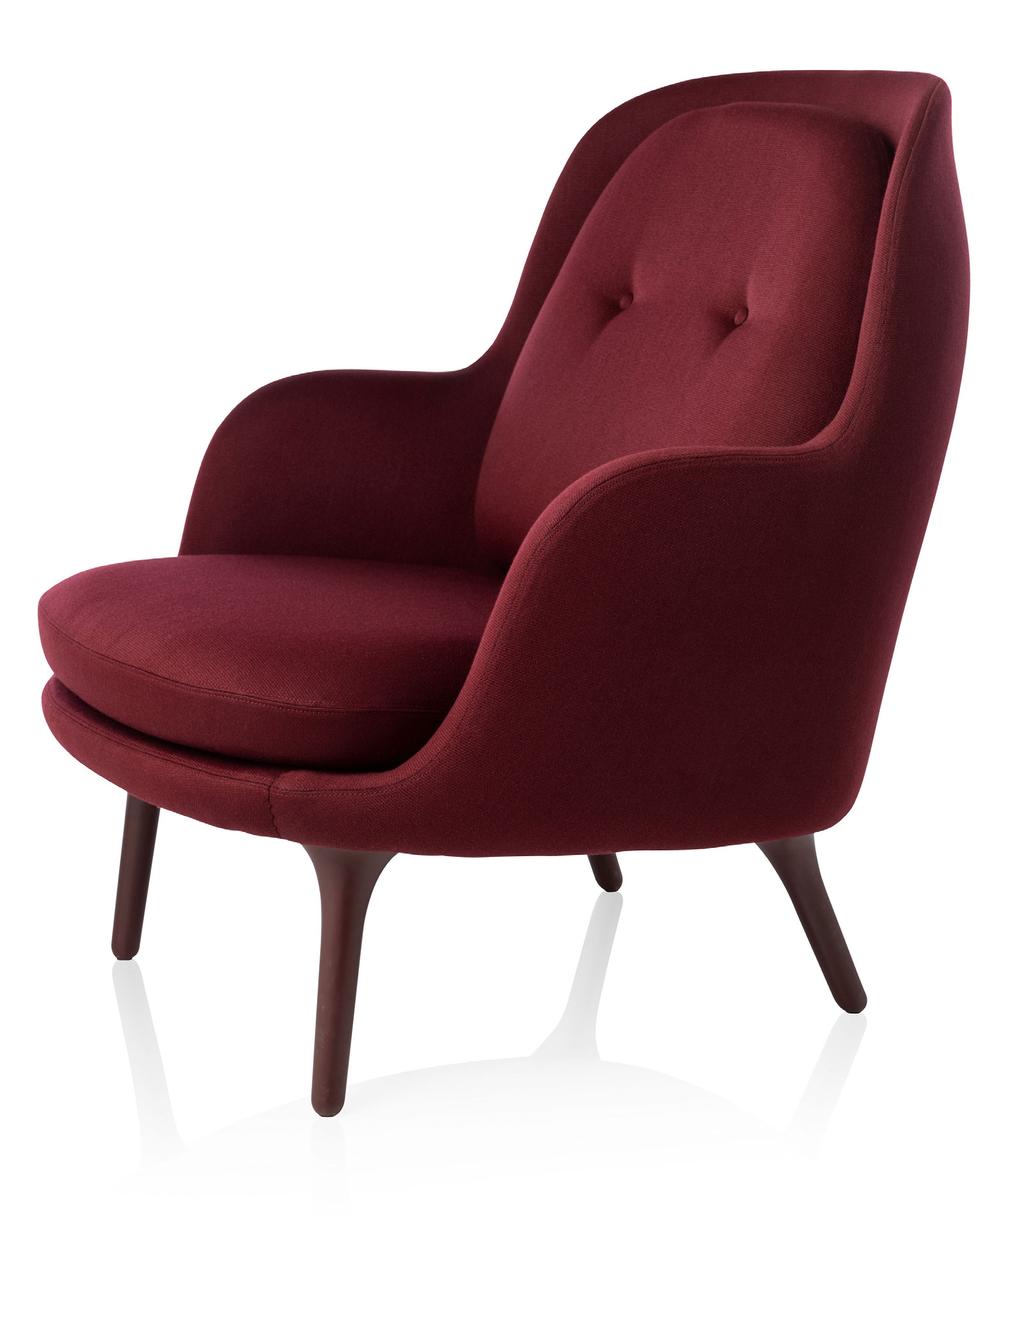 FRI Fri ist ein Sessel entworfen von Jaime Hayon Fri wurde entwickelt, um ein wohliges Gefühl in jedem Setting zu schaffen Natürlich bedarf es mehr als einen Sessel, um ein volles Ambiente zu